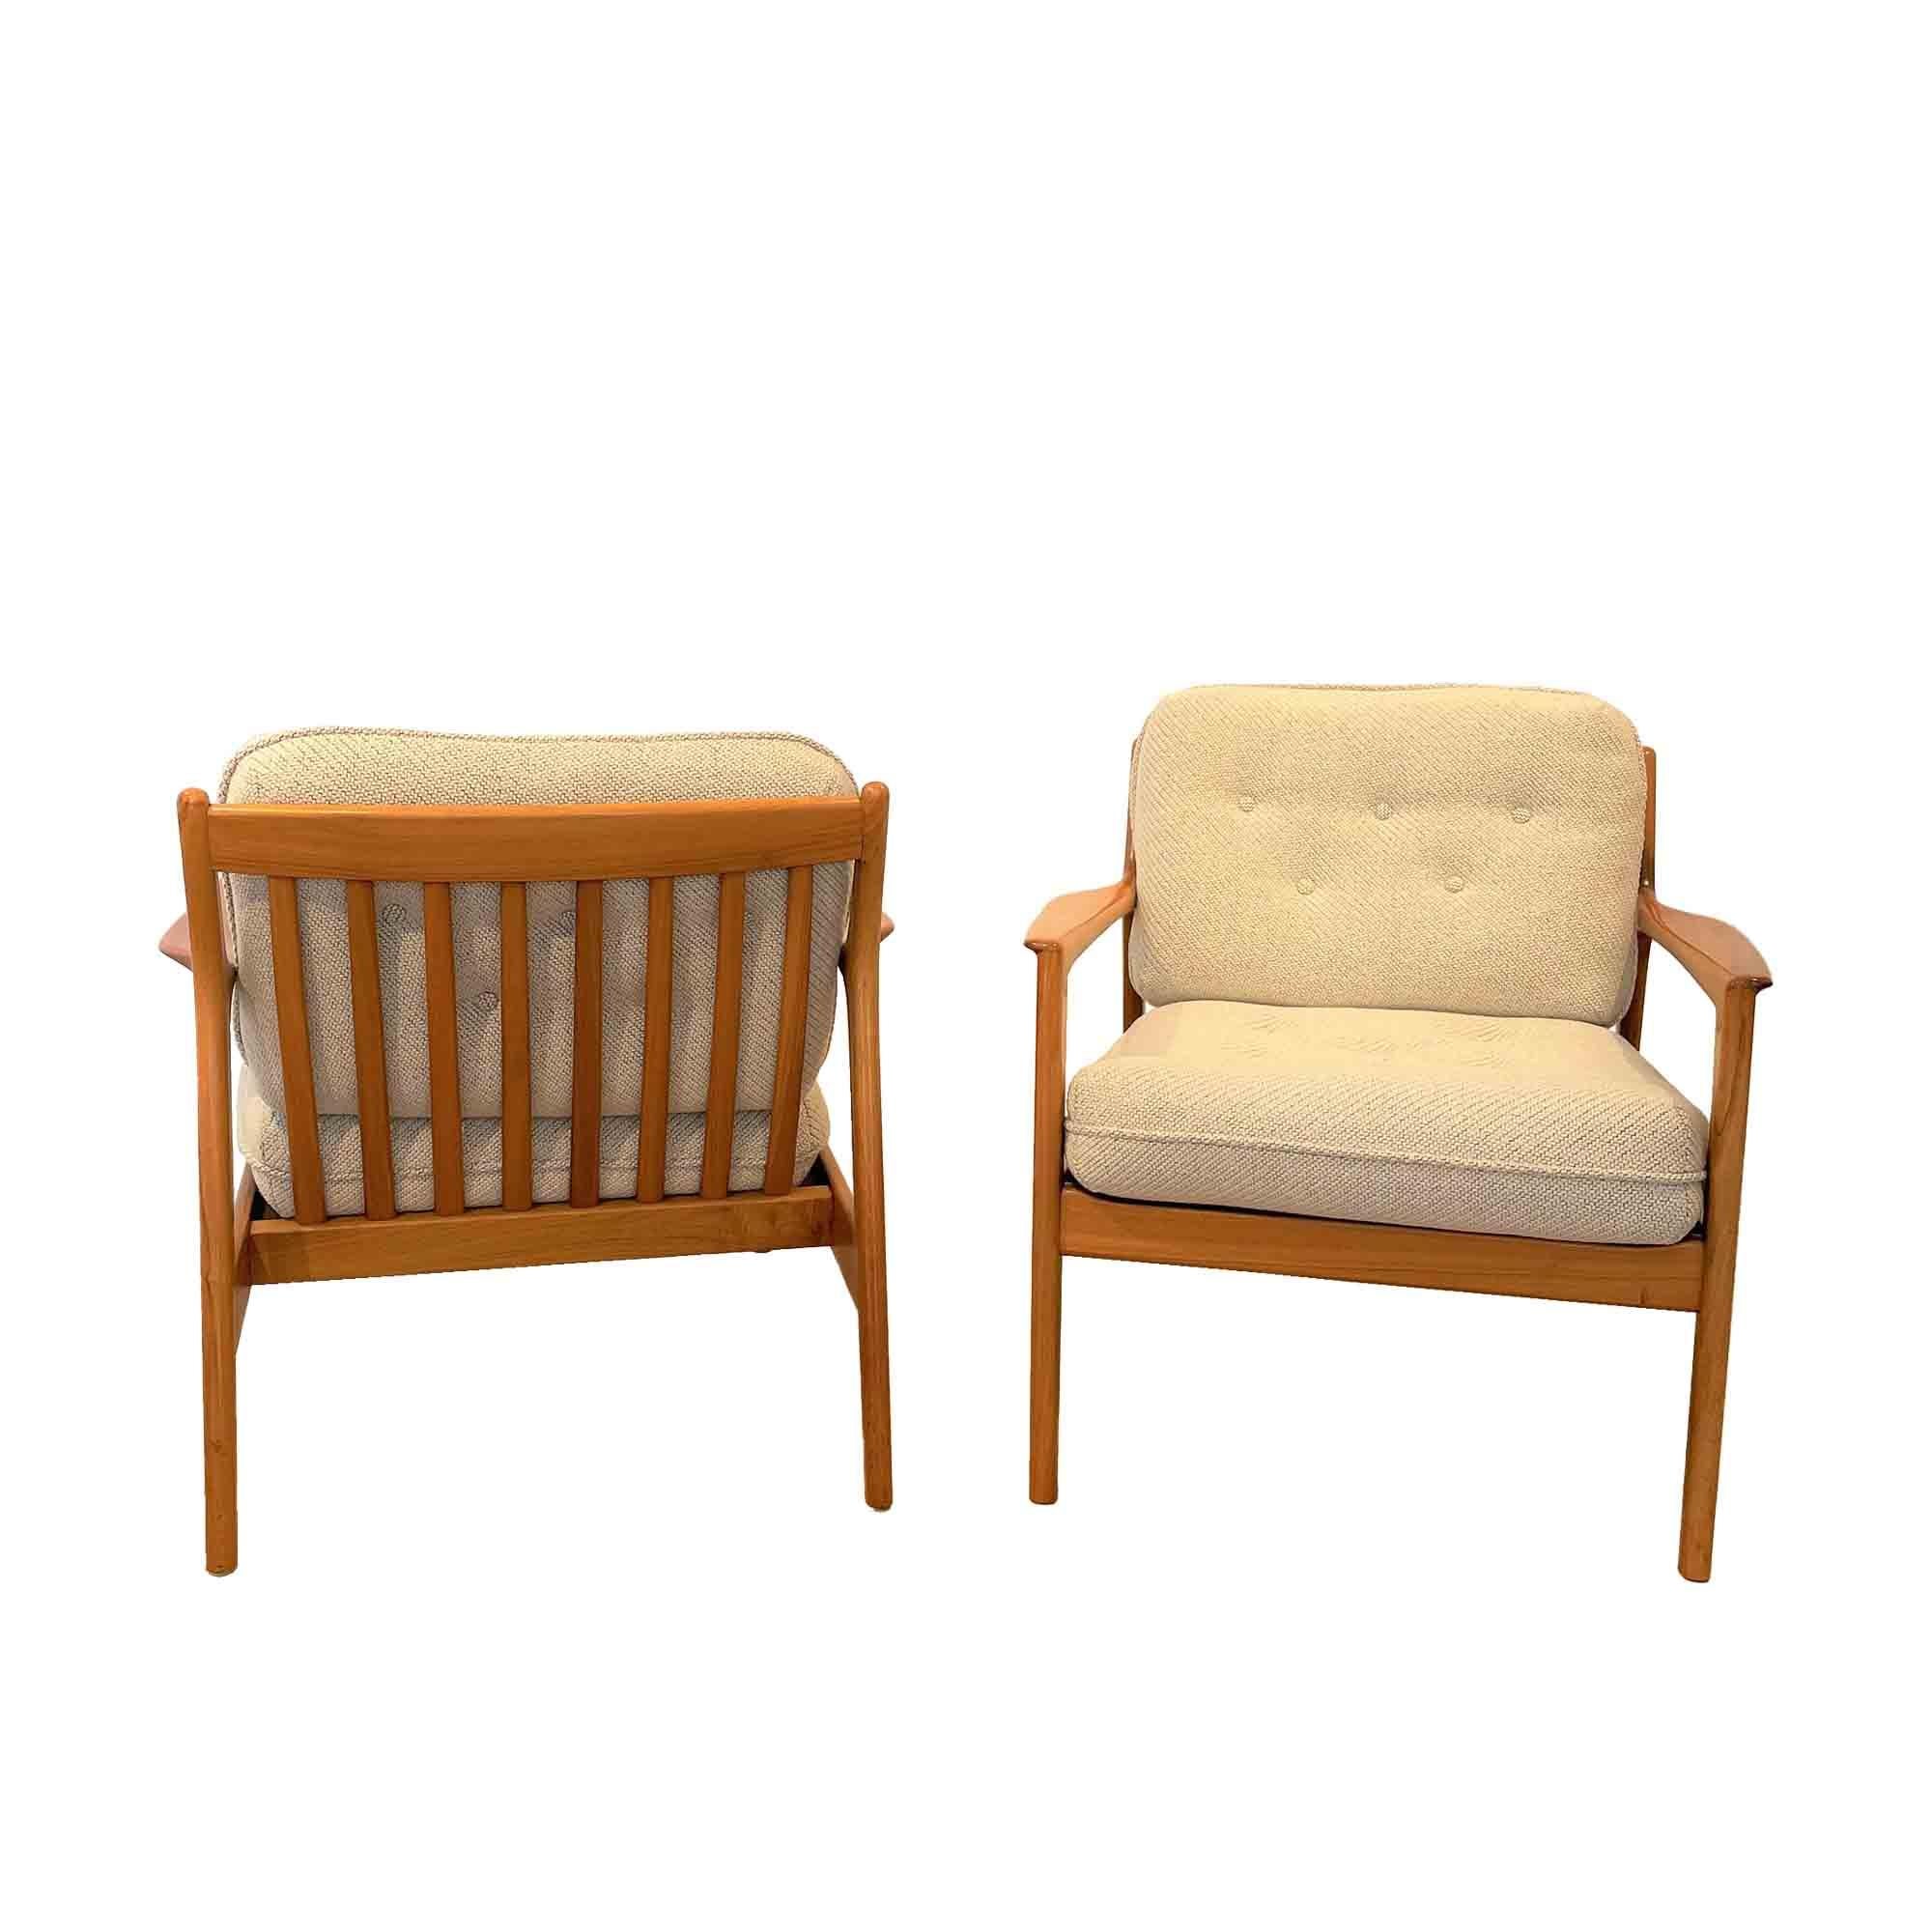 Ein Paar Sessel Modell USA 75 in Nussbaum vom schwedischen Designer Folke Ohlsson. Das Design dieser Sessel zeichnet sich durch eine sehr straffe Linie der Armlehnen und der hinteren Beine mit einer schönen Maserung des Nussbaums an den Seiten aus.